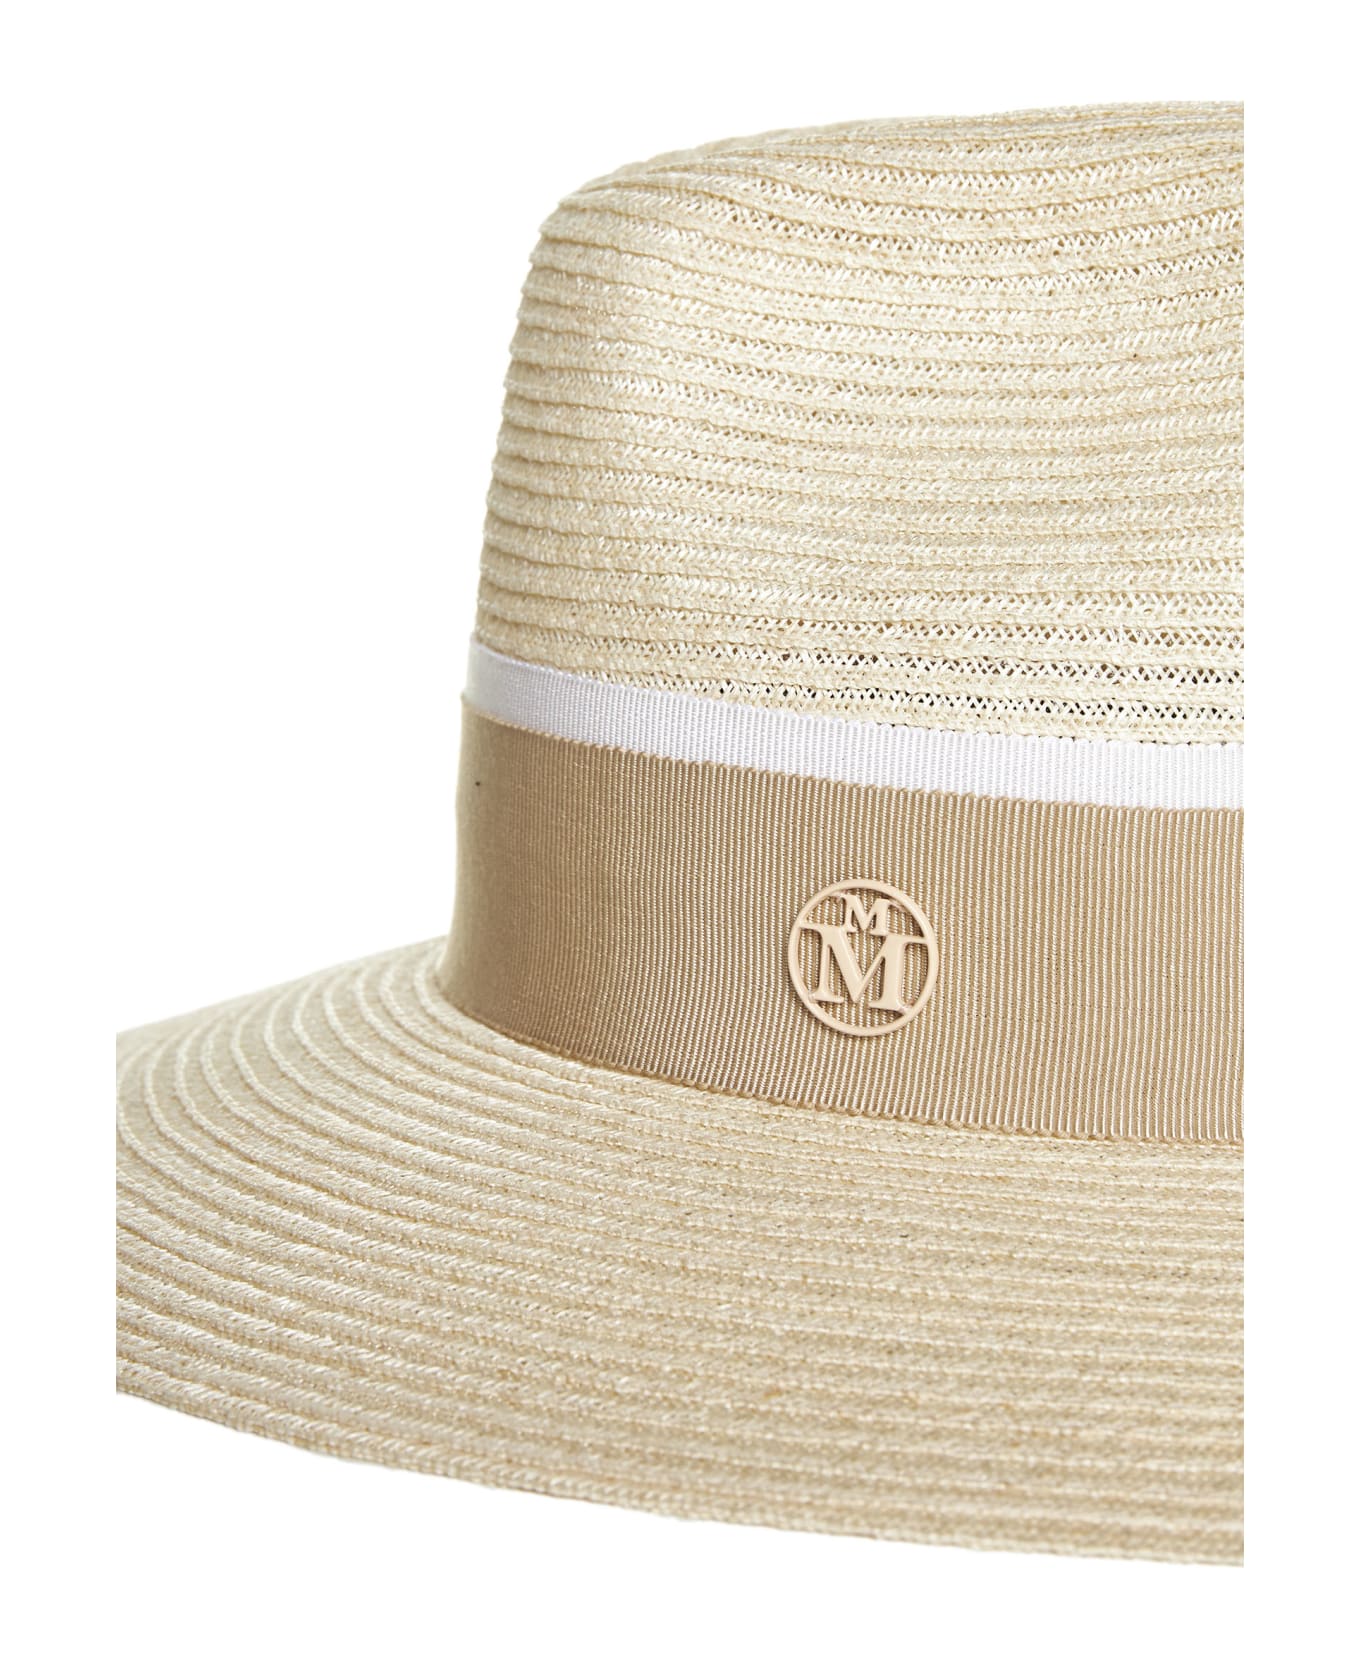 Maison Michel Hat - Natural beige 帽子